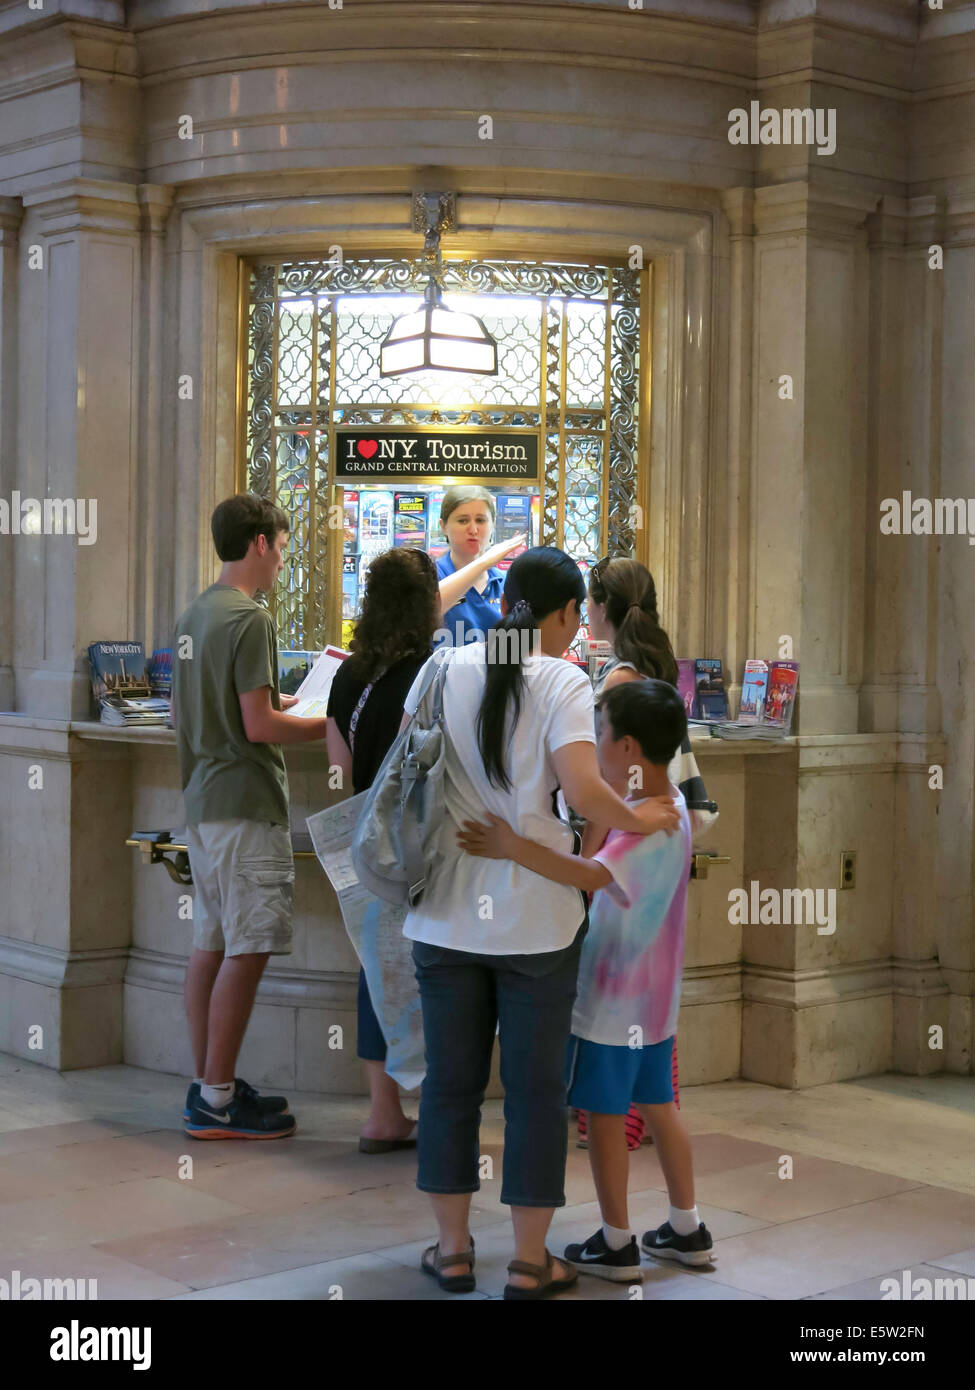 Informazioni per i visitatori finestra e turisti, Grand Central Terminal, NYC, STATI UNITI D'AMERICA Foto Stock